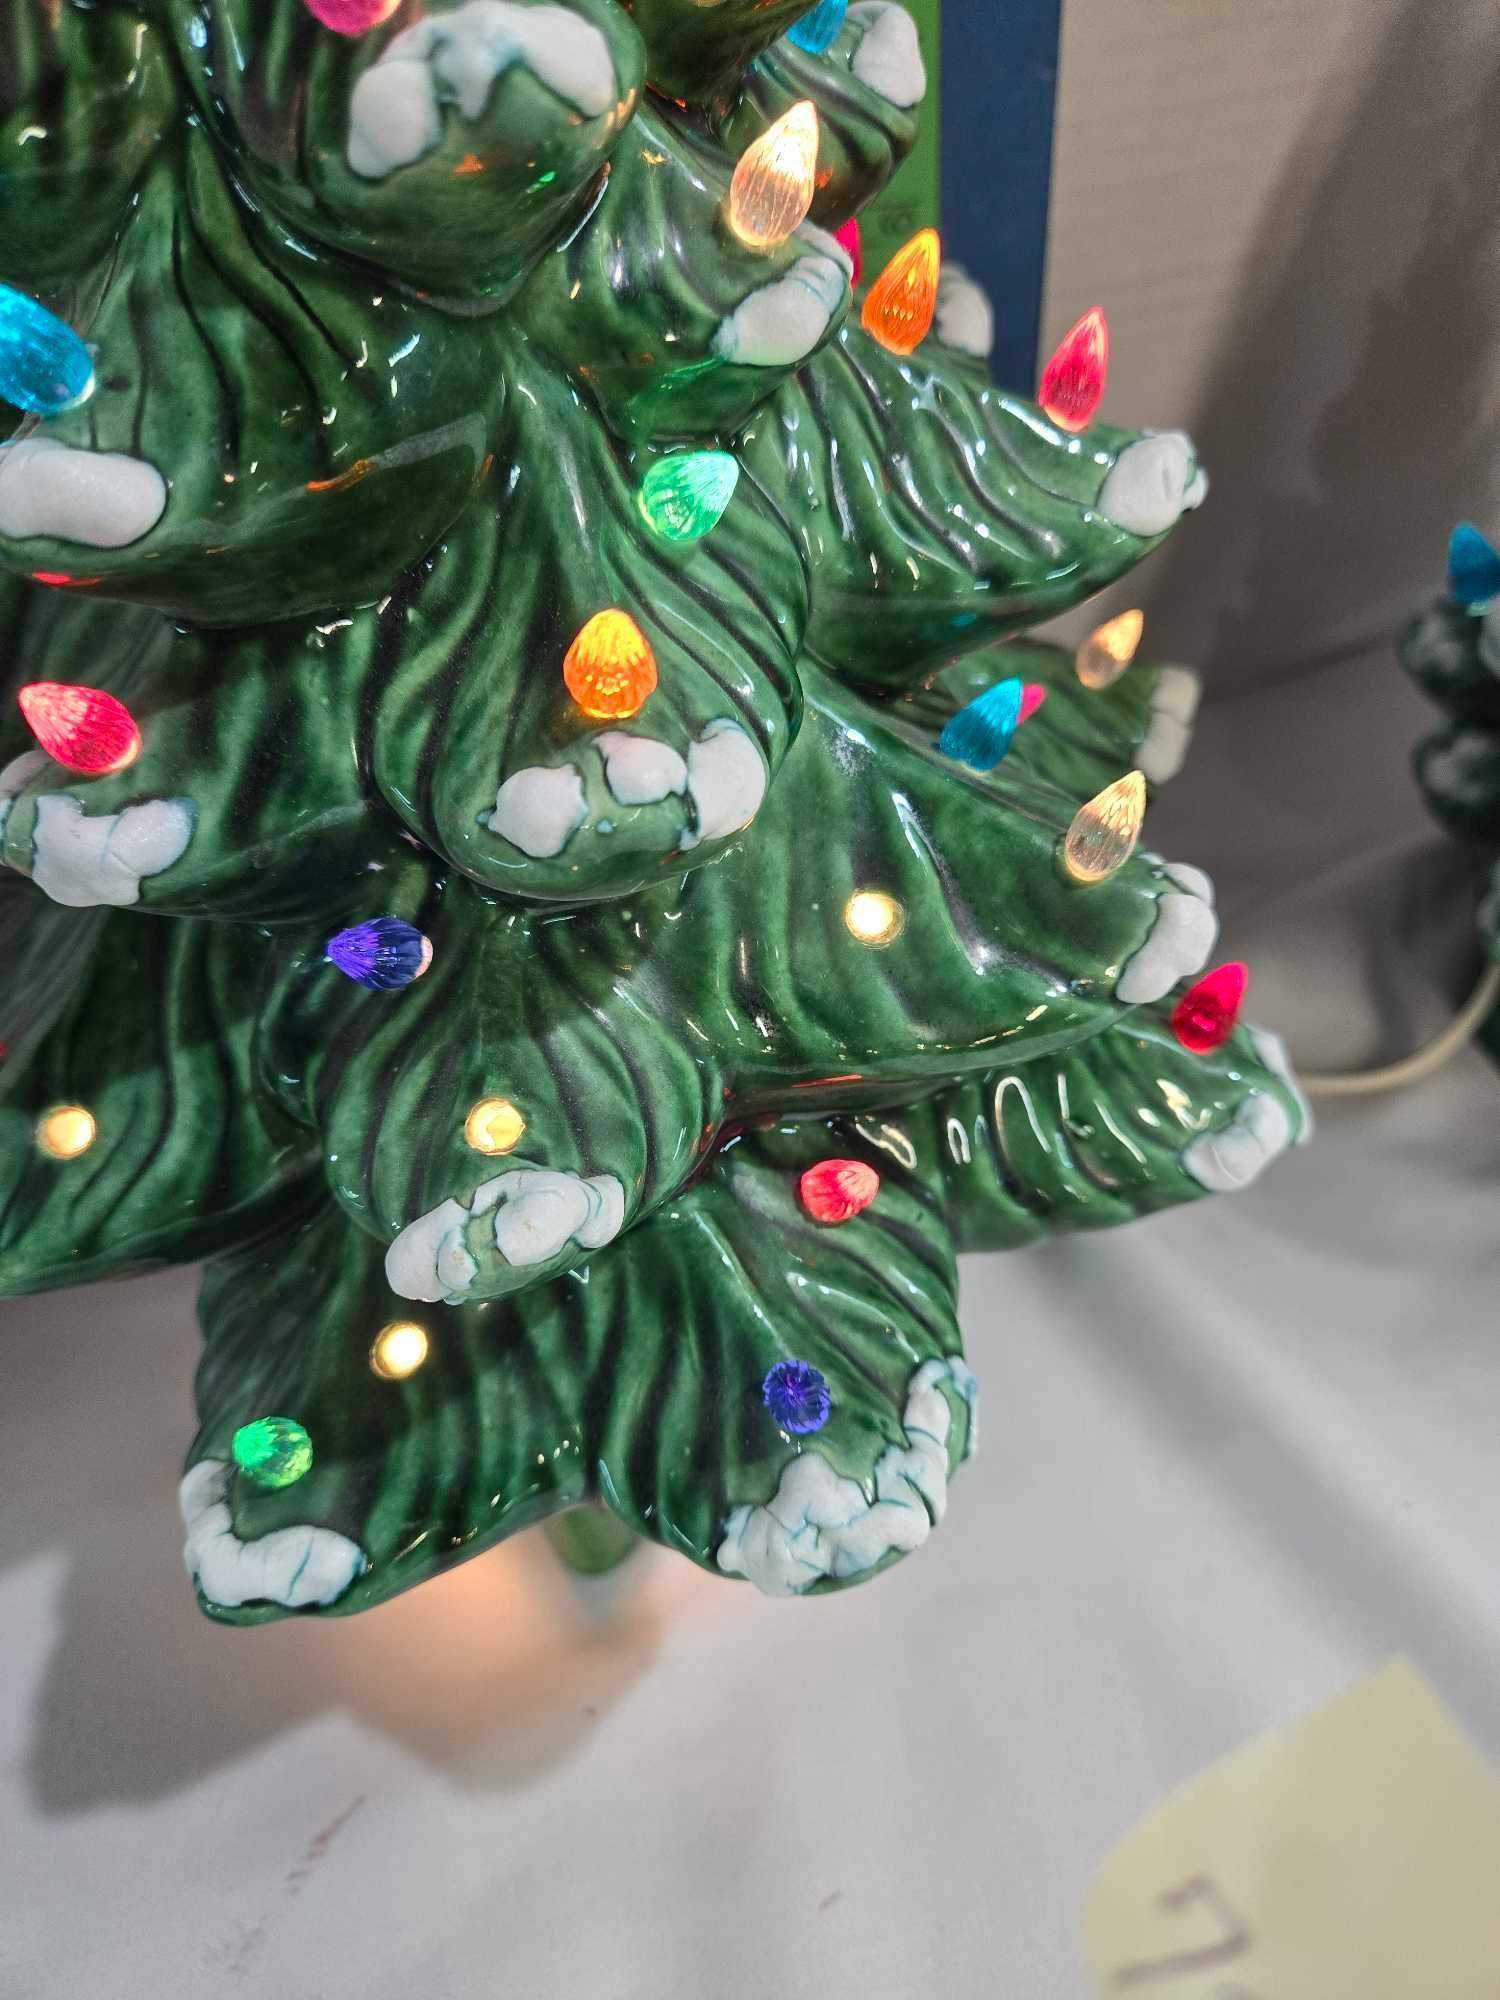 2 Vintage Ceramic Christmas Tree Lights with Snow